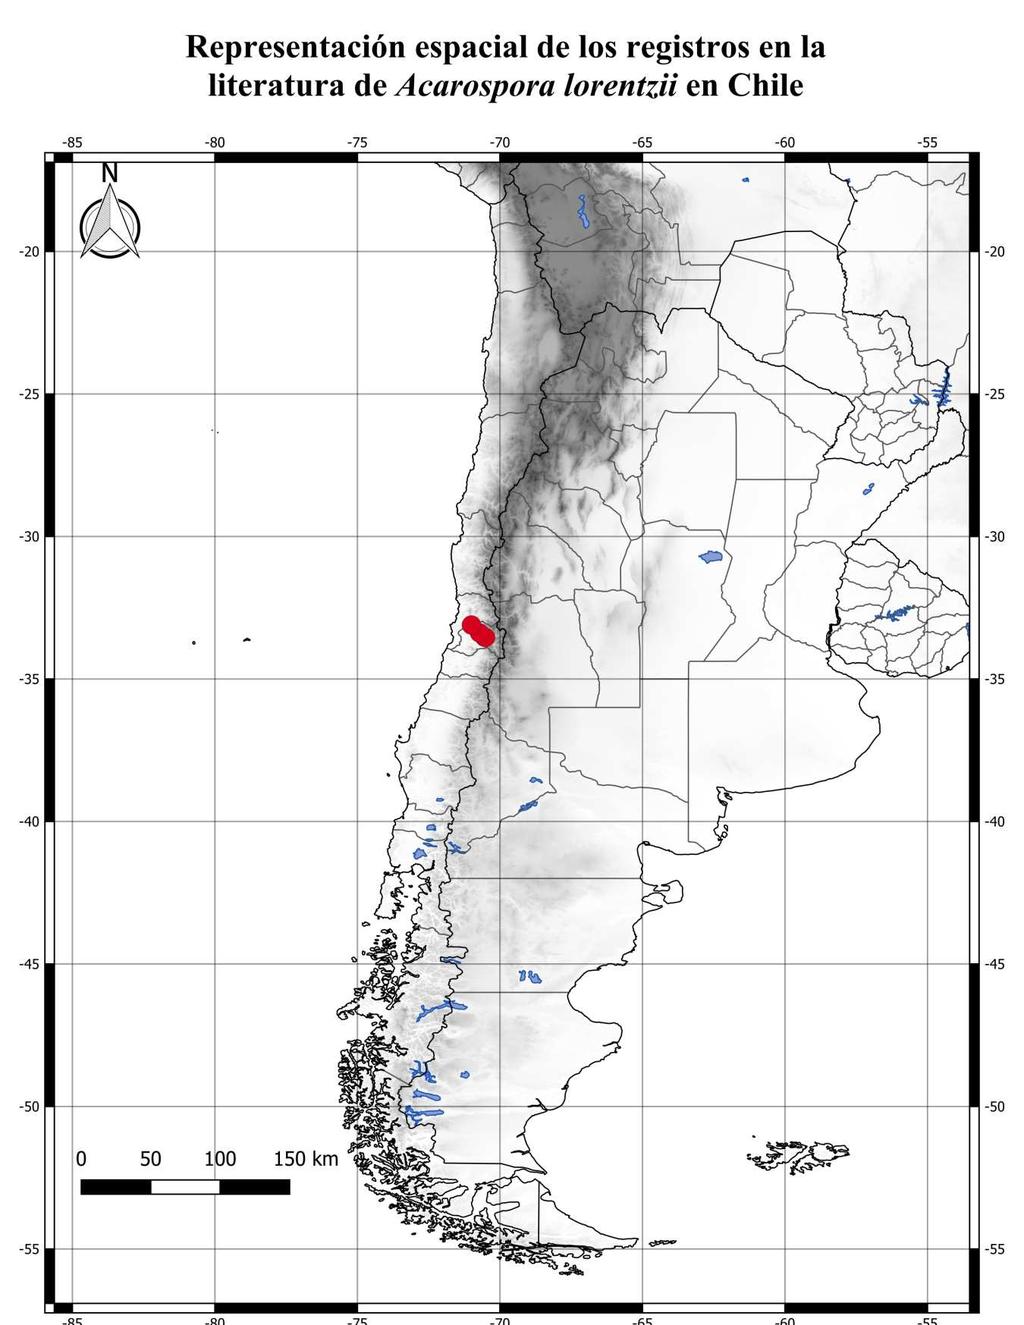 Tabla de Registros de la especie en Chile: Presencia actual (incierto (0-25%); dudosa (26-50%); probable (51-75%); absoluta (76-100%)) Mapa de los puntos de recolecta y avistamiento en Chile: Otros